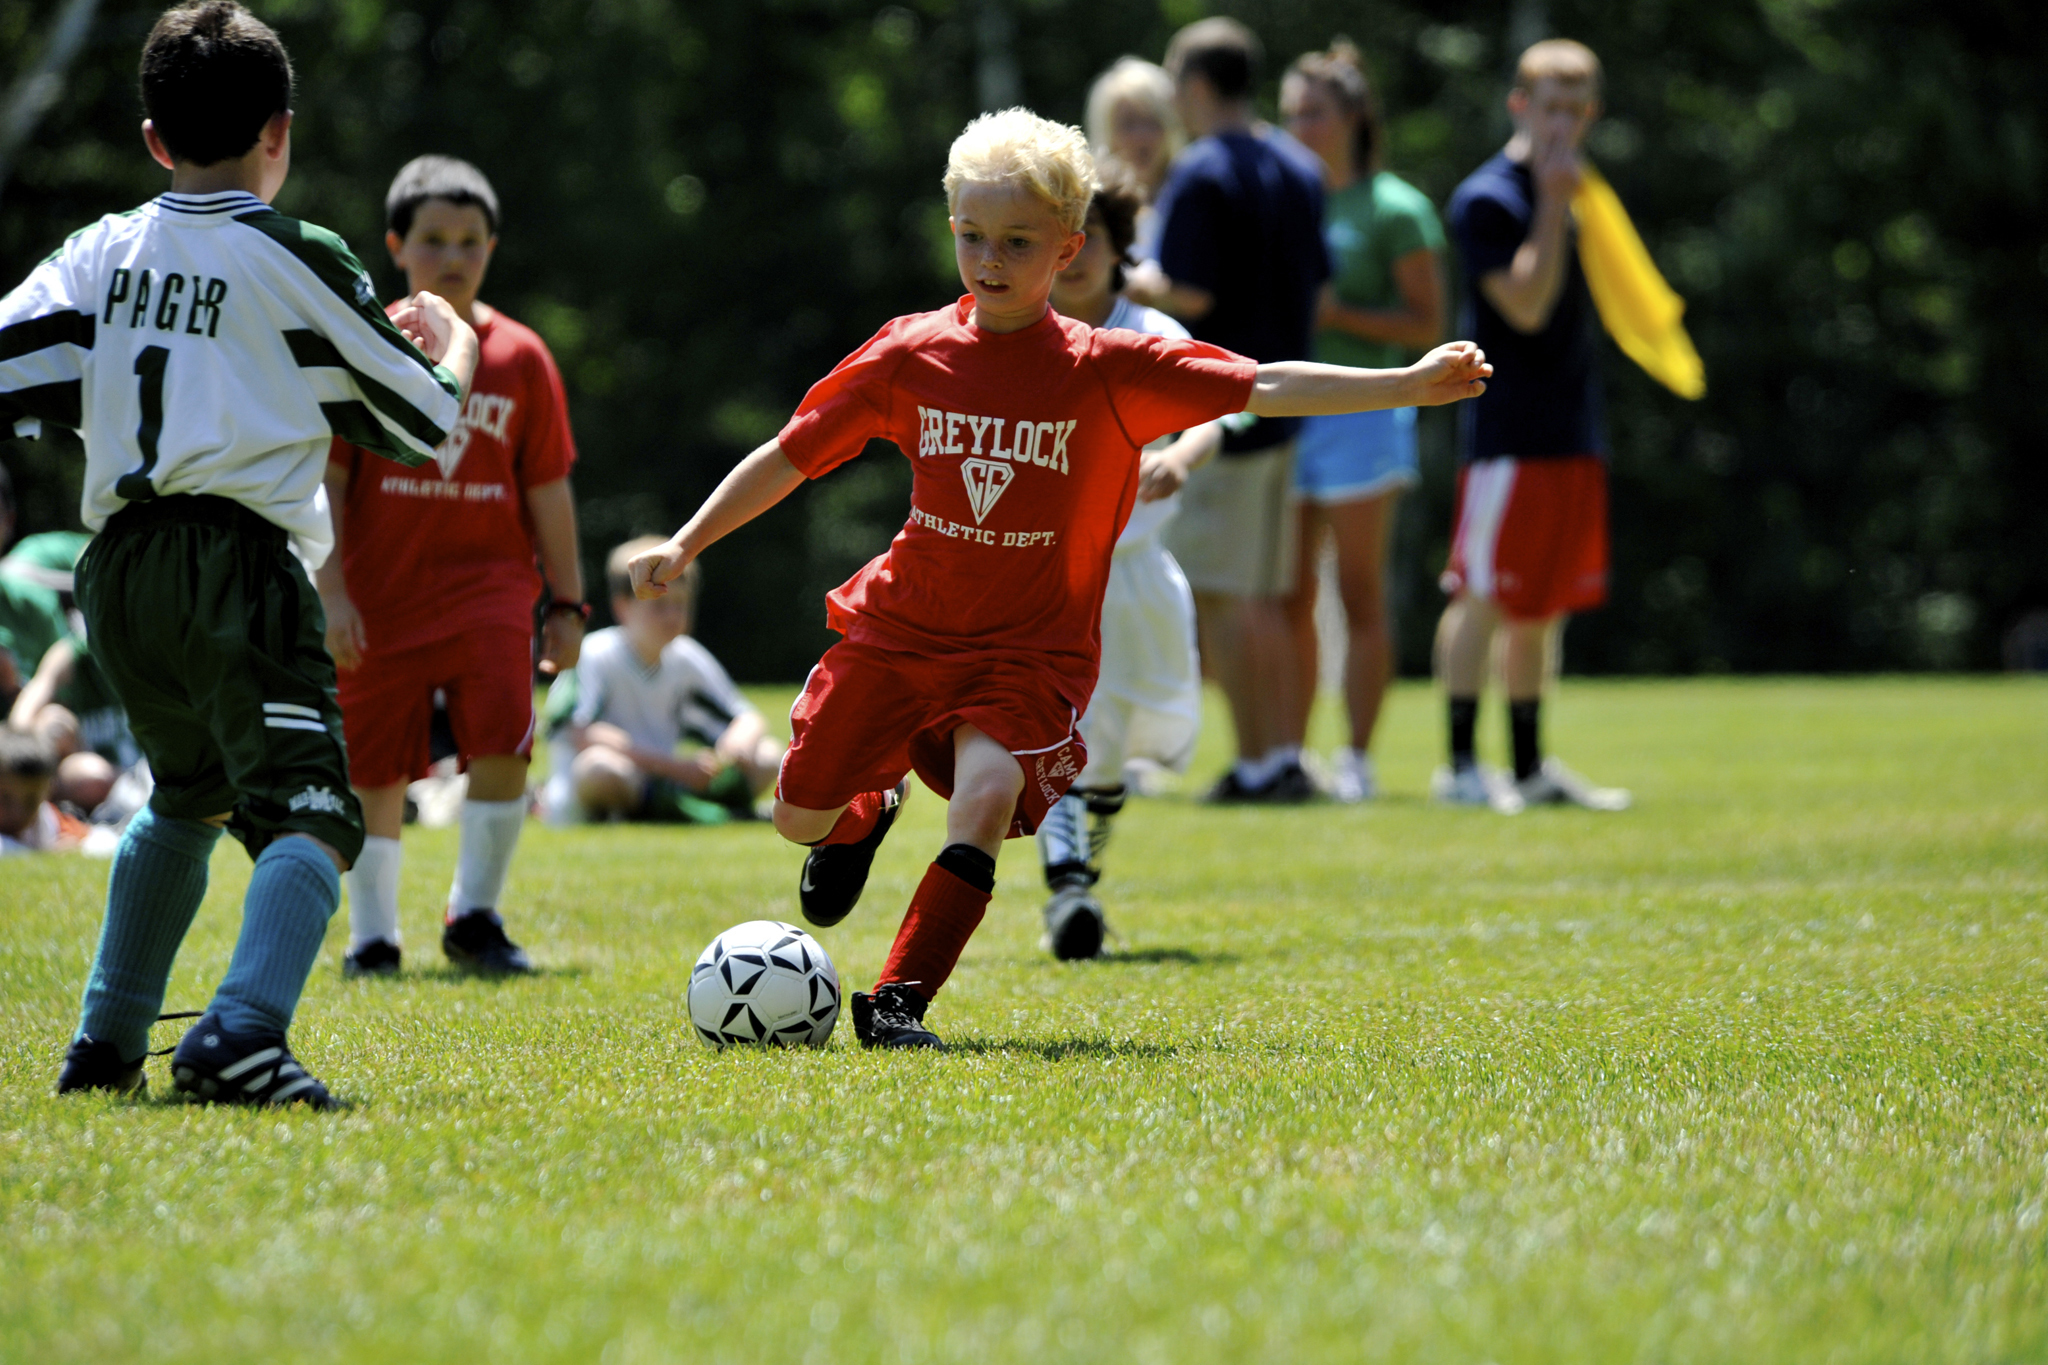 Сестер футбол играть. Игра футбол. Футбол дети. Дети играющие в футбол. Детский футбол Германия.